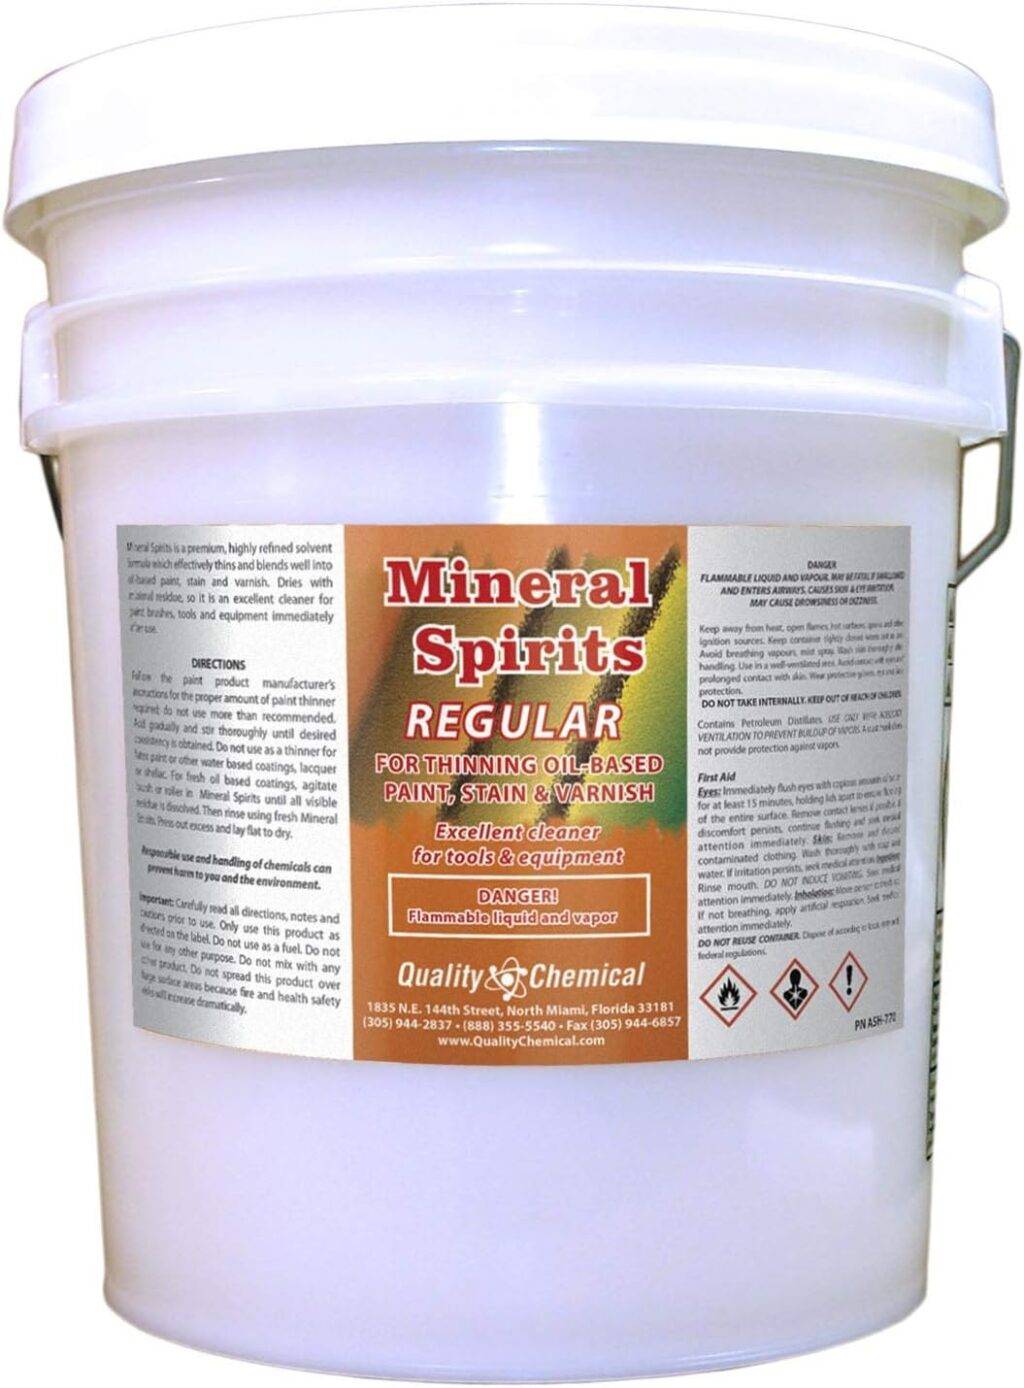 Bucket of mineral spirits regular.